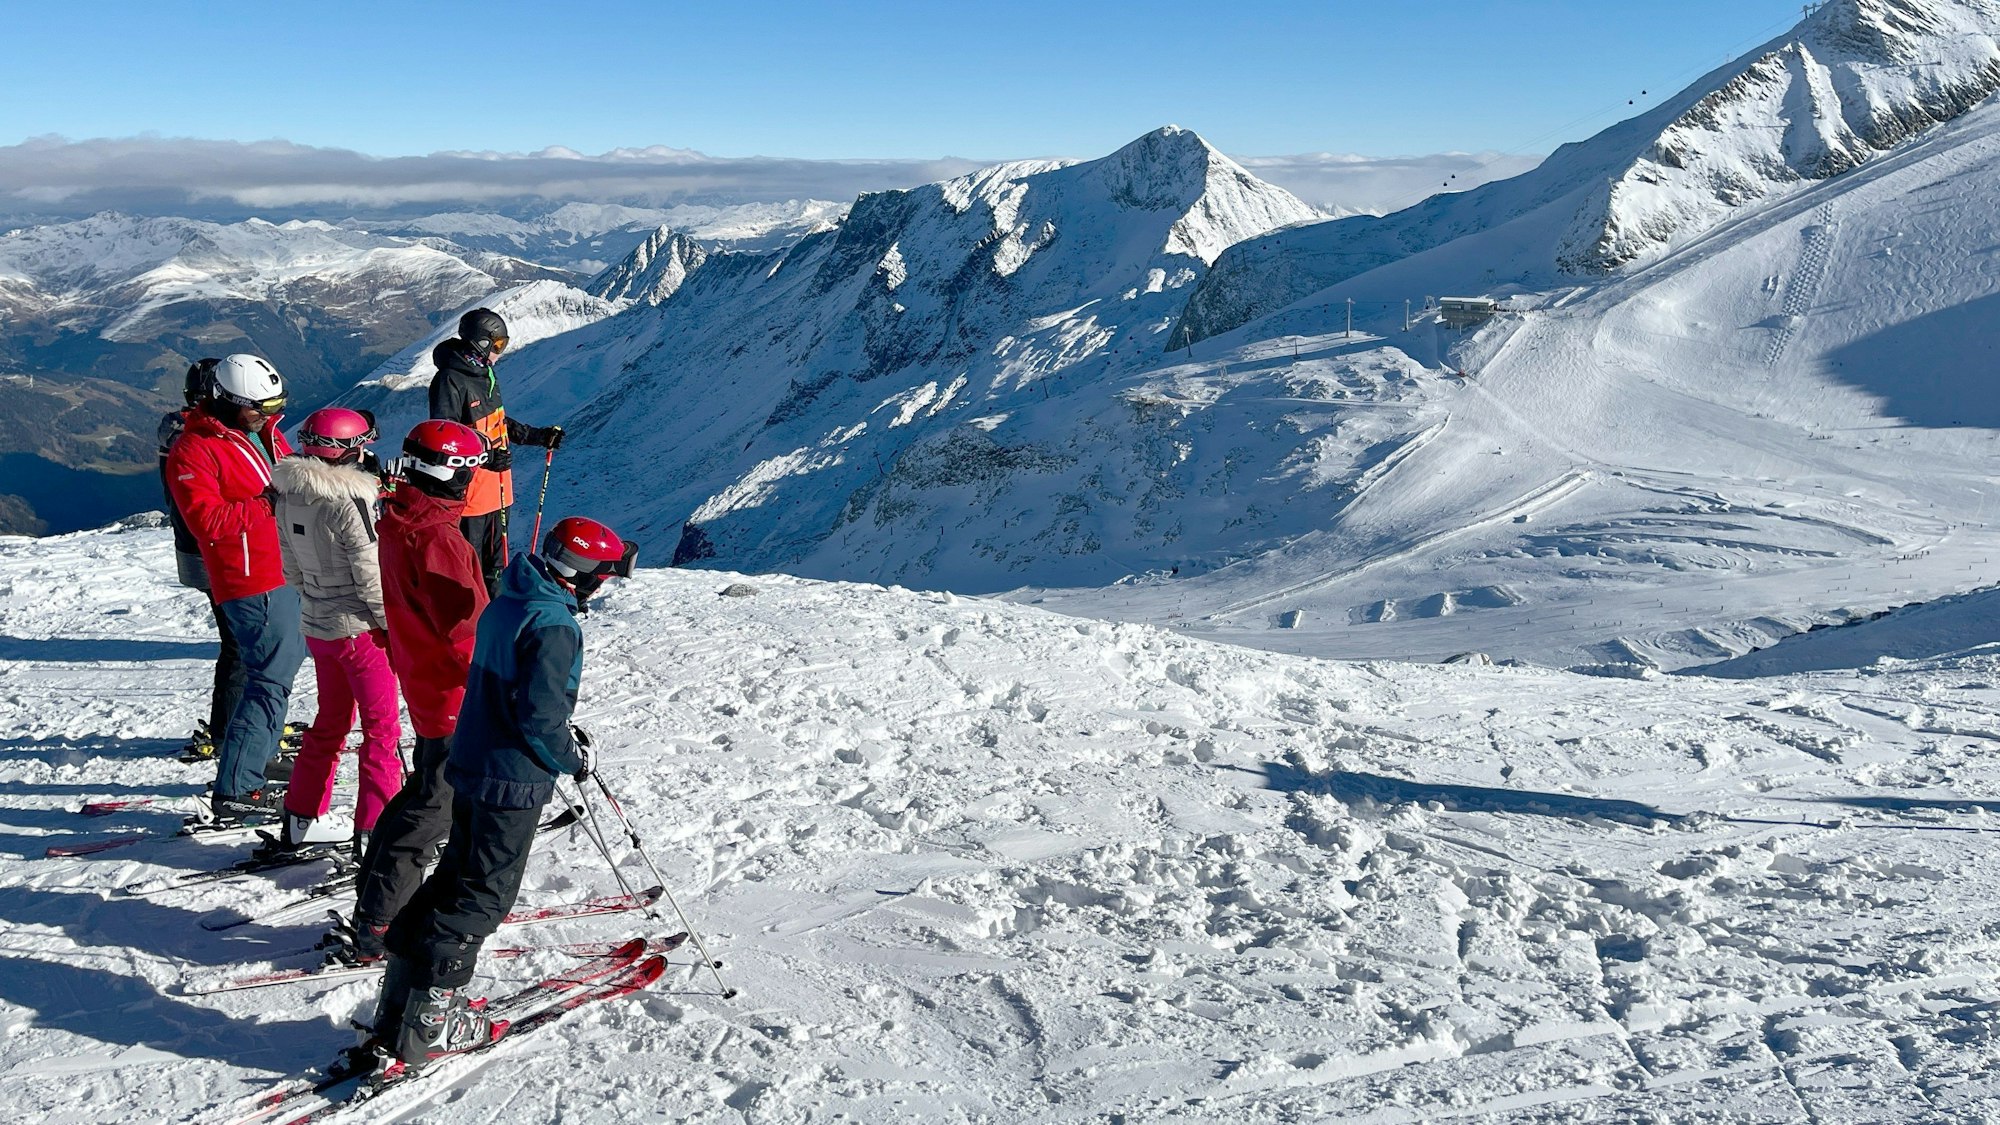 Wintersportler am Skigebiet Hintertuxer Gletscher in Österreich